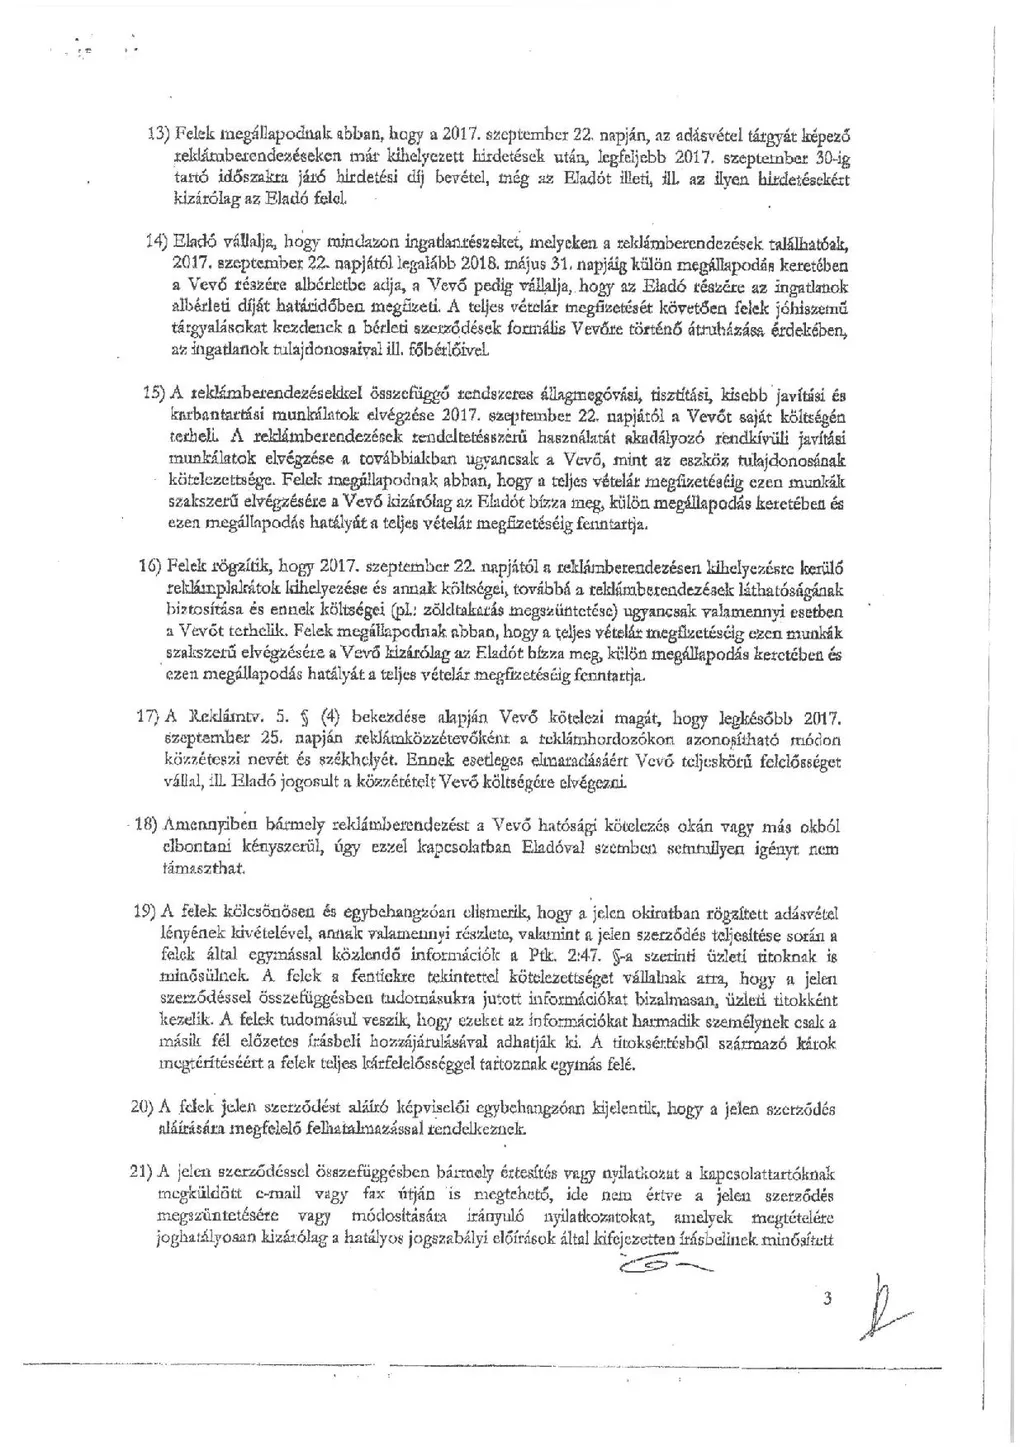 Simicska-Jobbik szerződés 